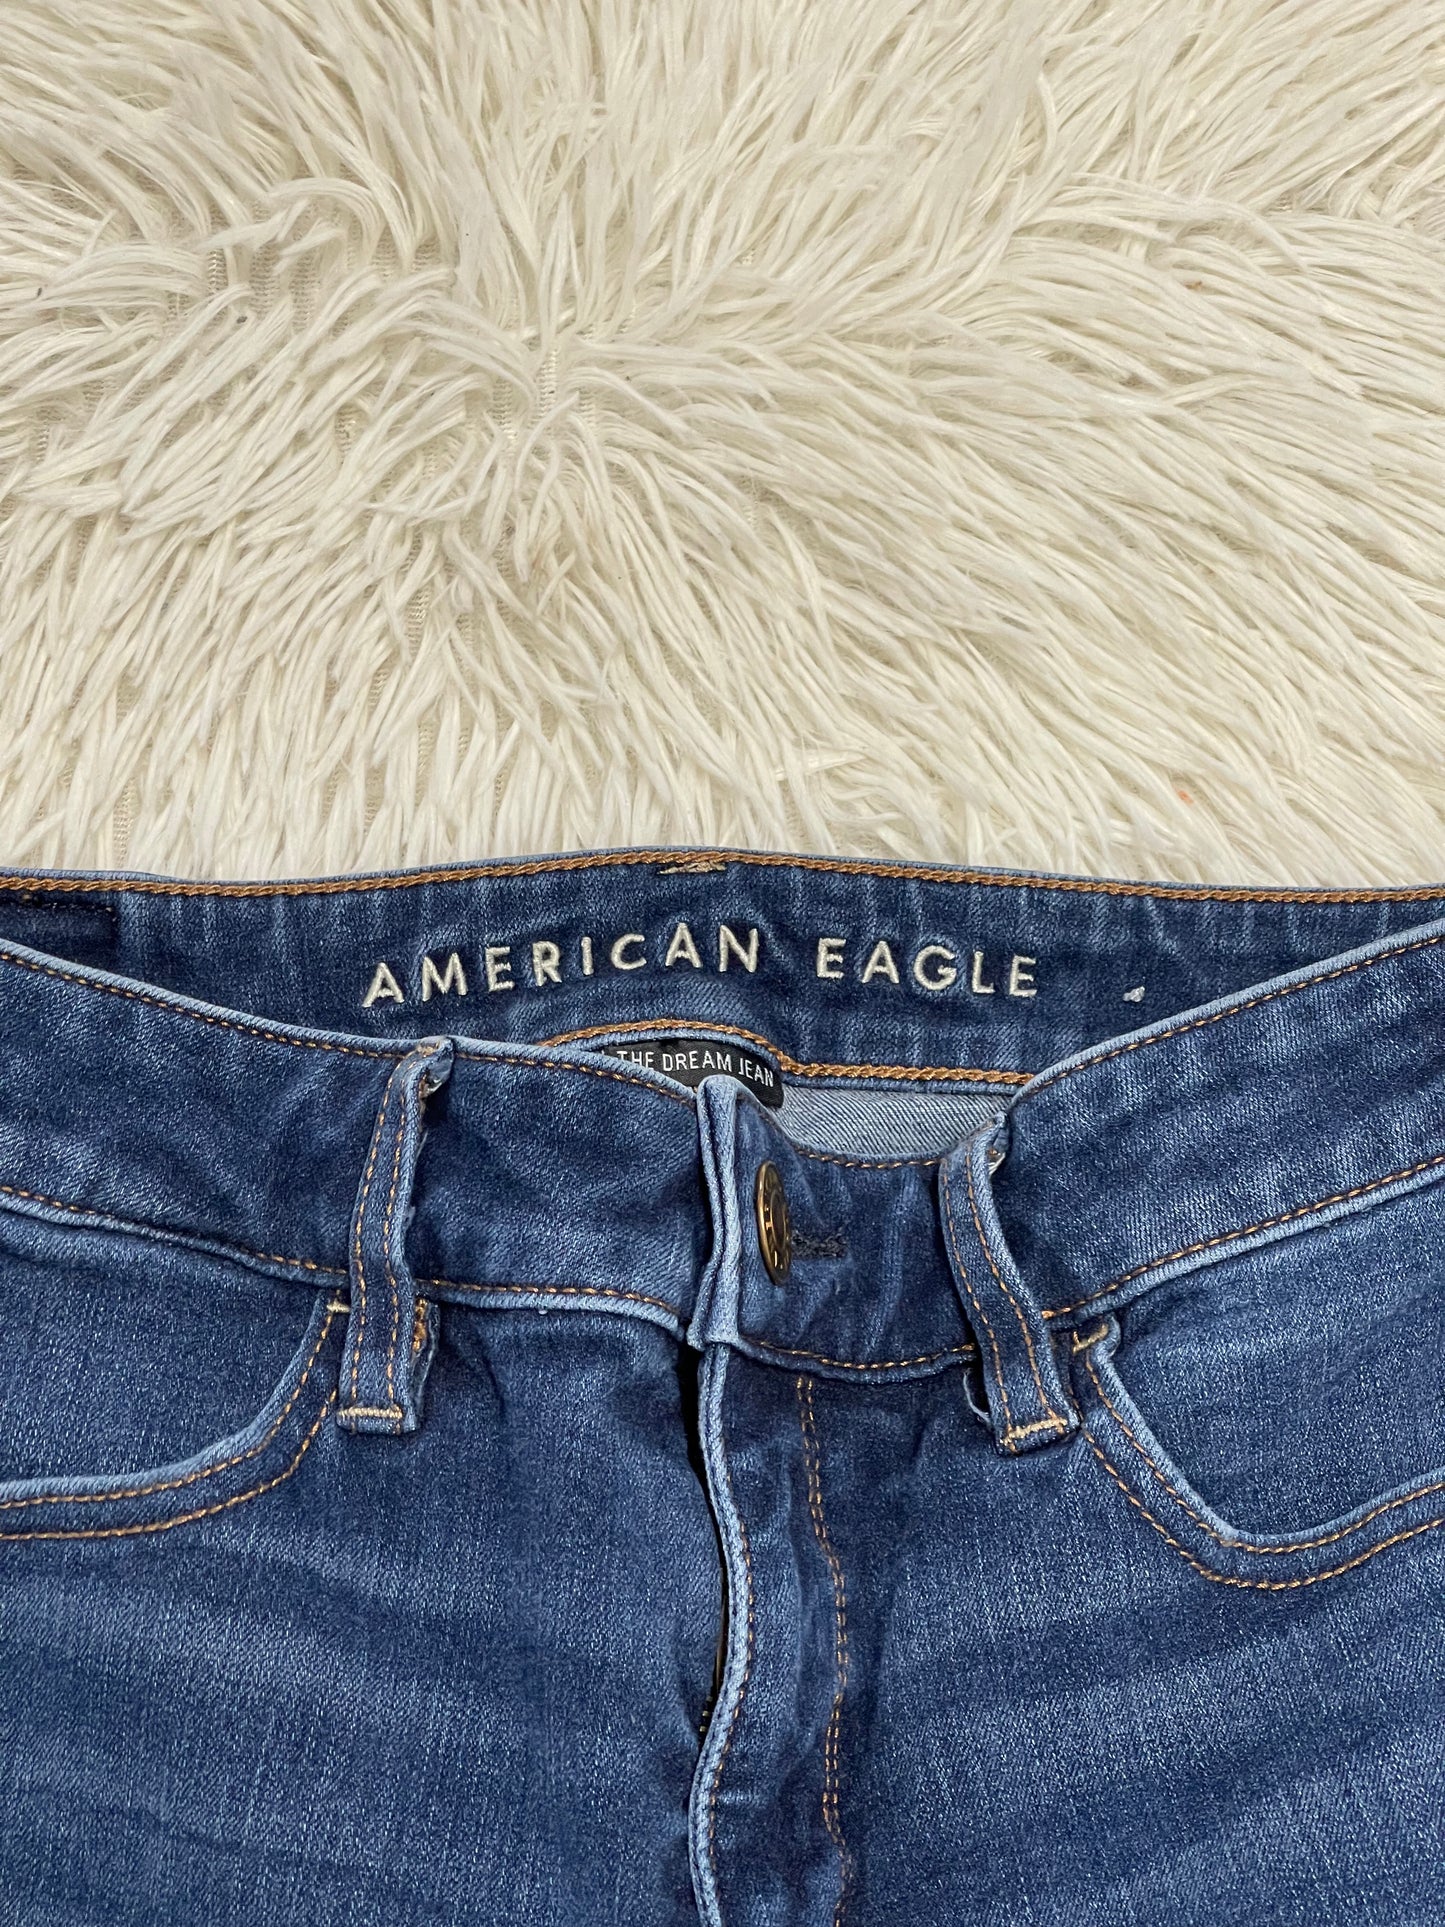 American Eagle Women's Hi-Rise Jegging Medium Washed - Size 4